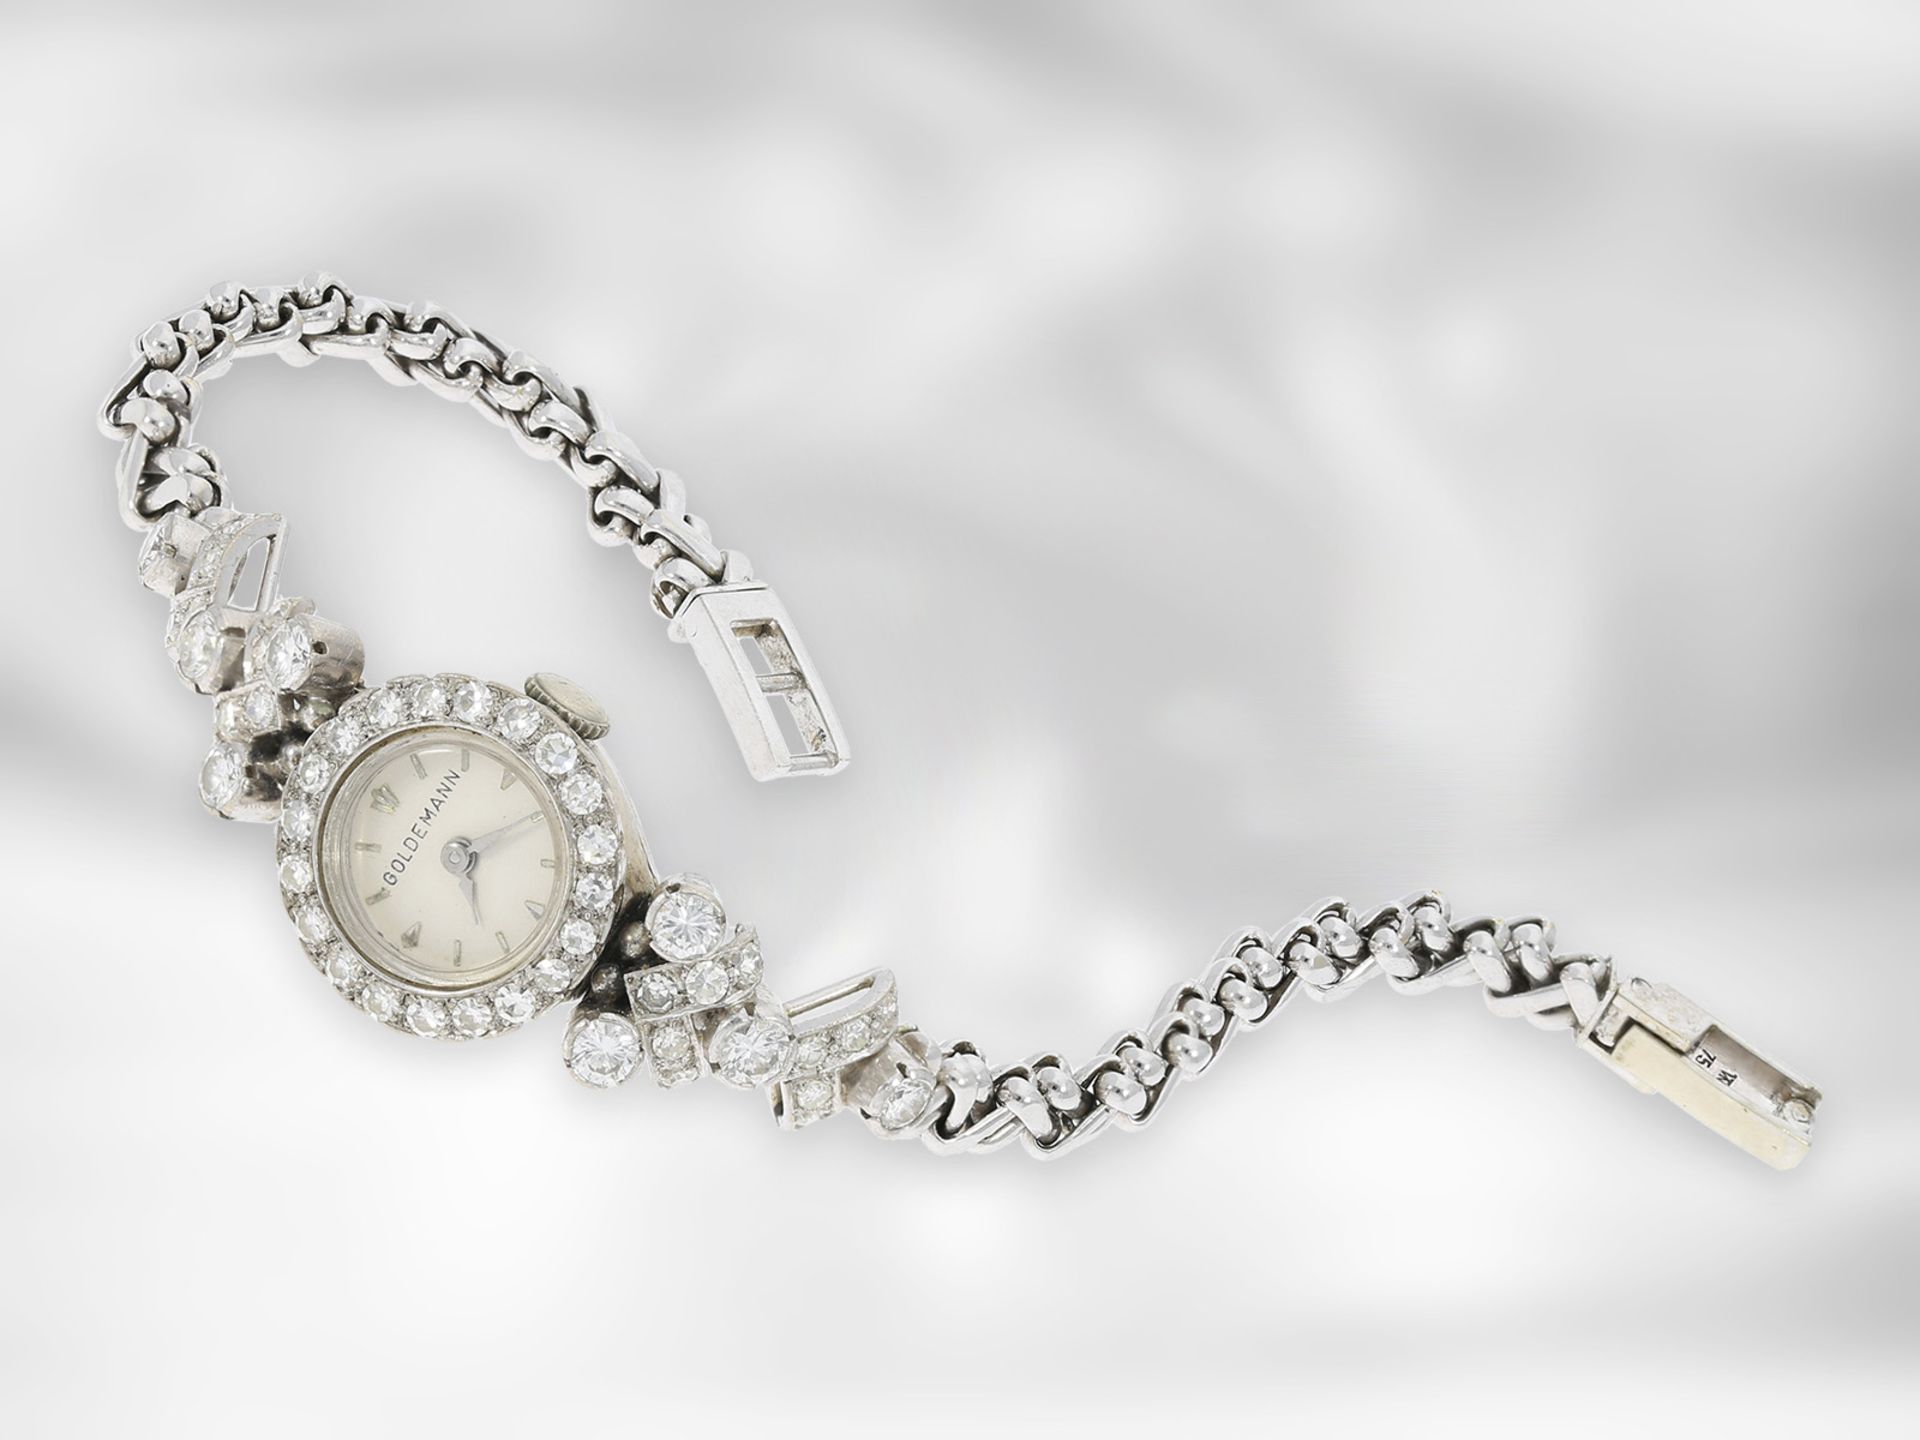 Armbanduhr: dekorative, ausgefallene und hochwertig gearbeitete vintage Damenuhr mit reichem